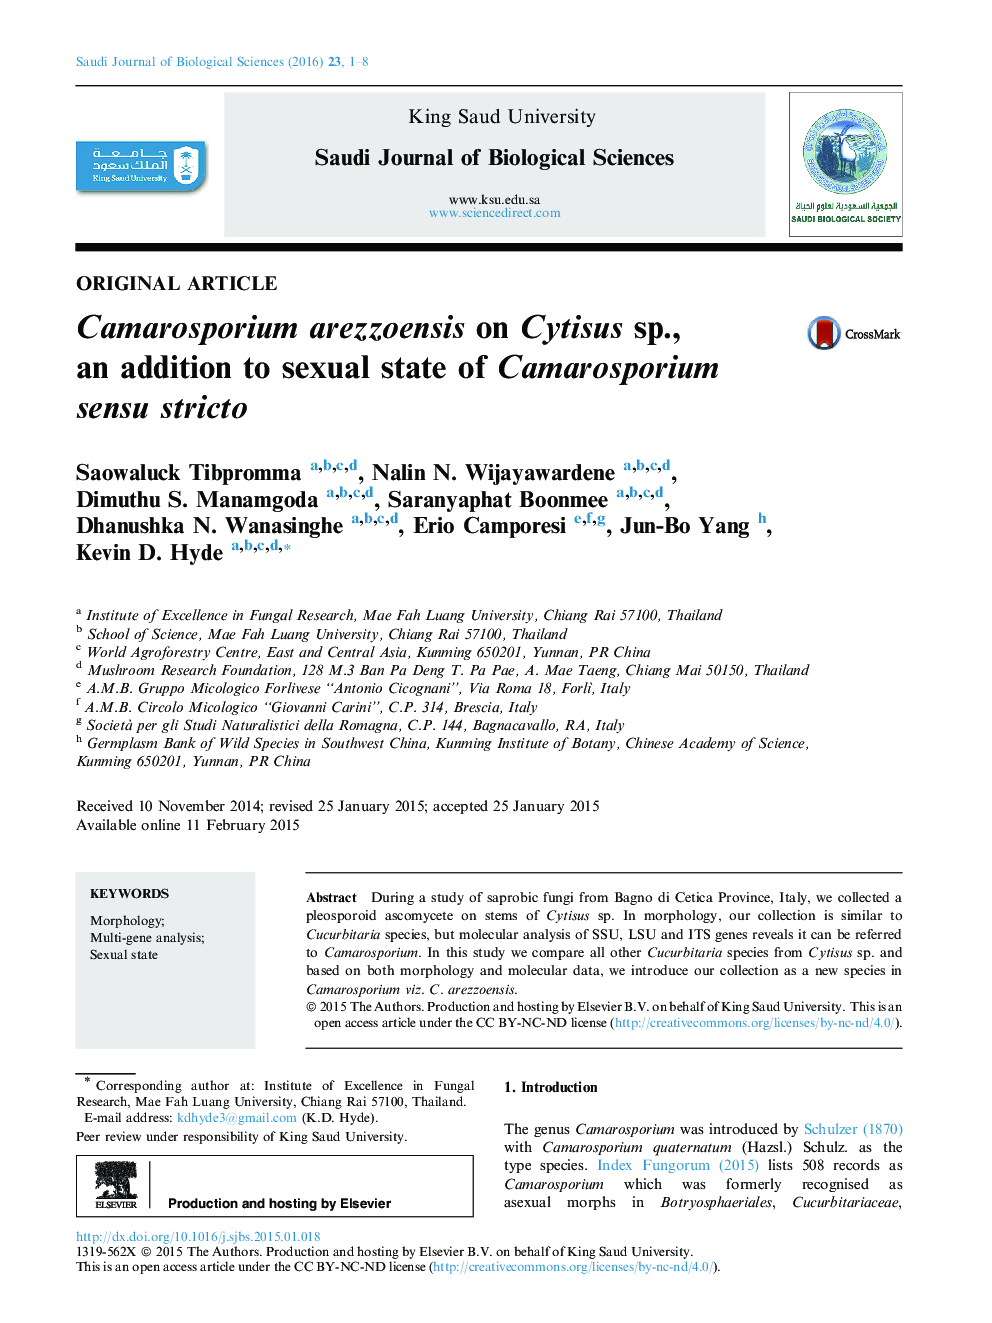 Camarosporium arezzoensis on Cytisus sp., an addition to sexual state of Camarosporium sensu stricto 